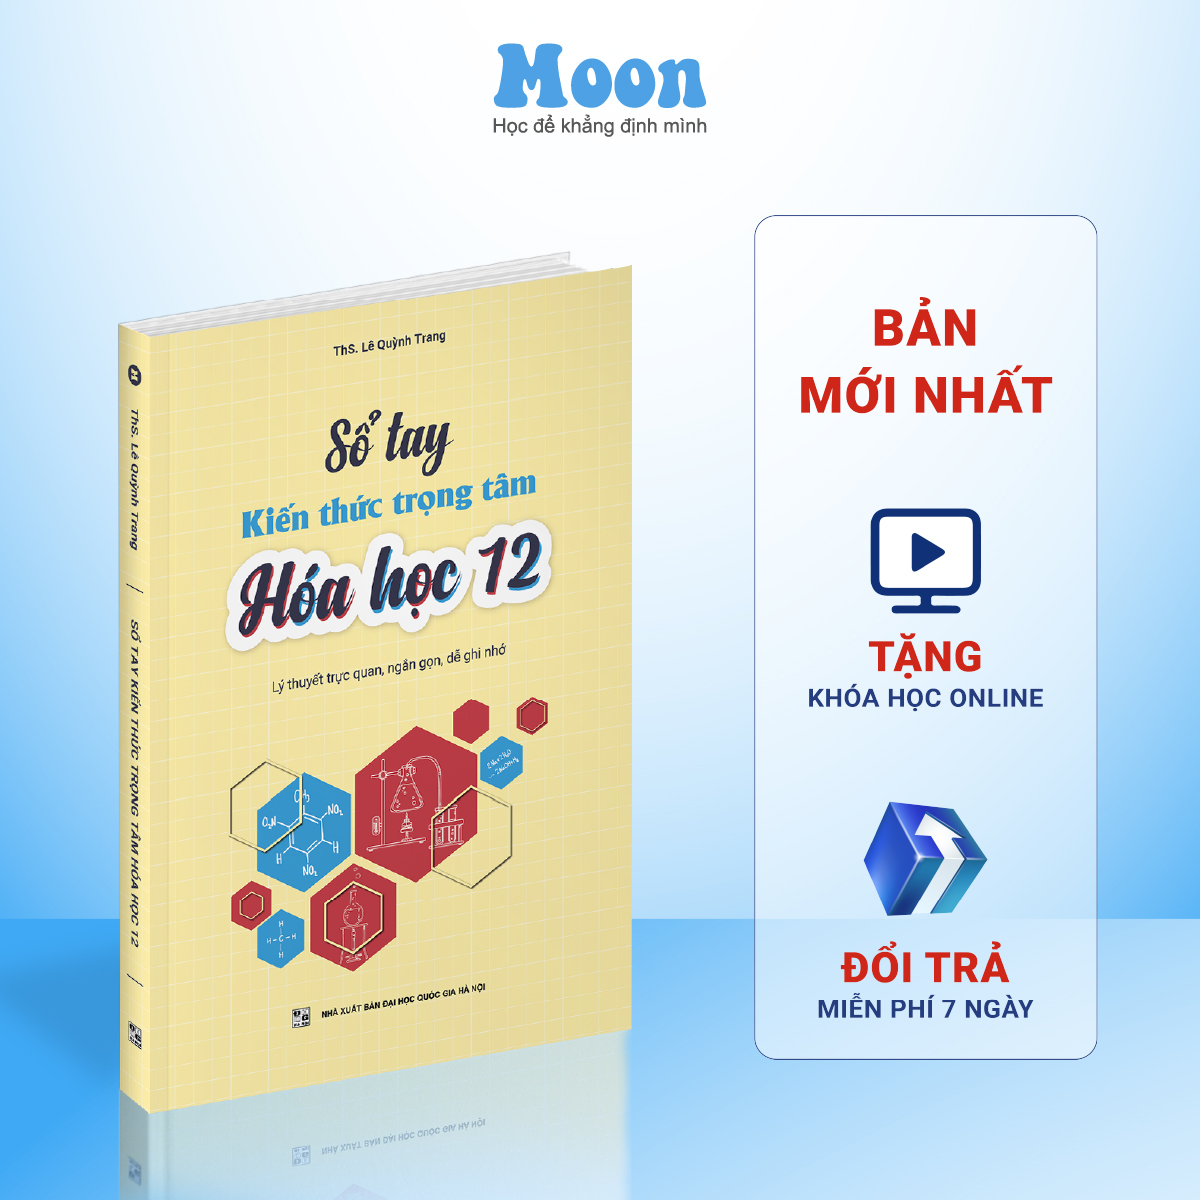 Sổ tay kiến thức trọng tâm hoá học 12, công thức giải nhanh hoá ôn thi THPT moonbook